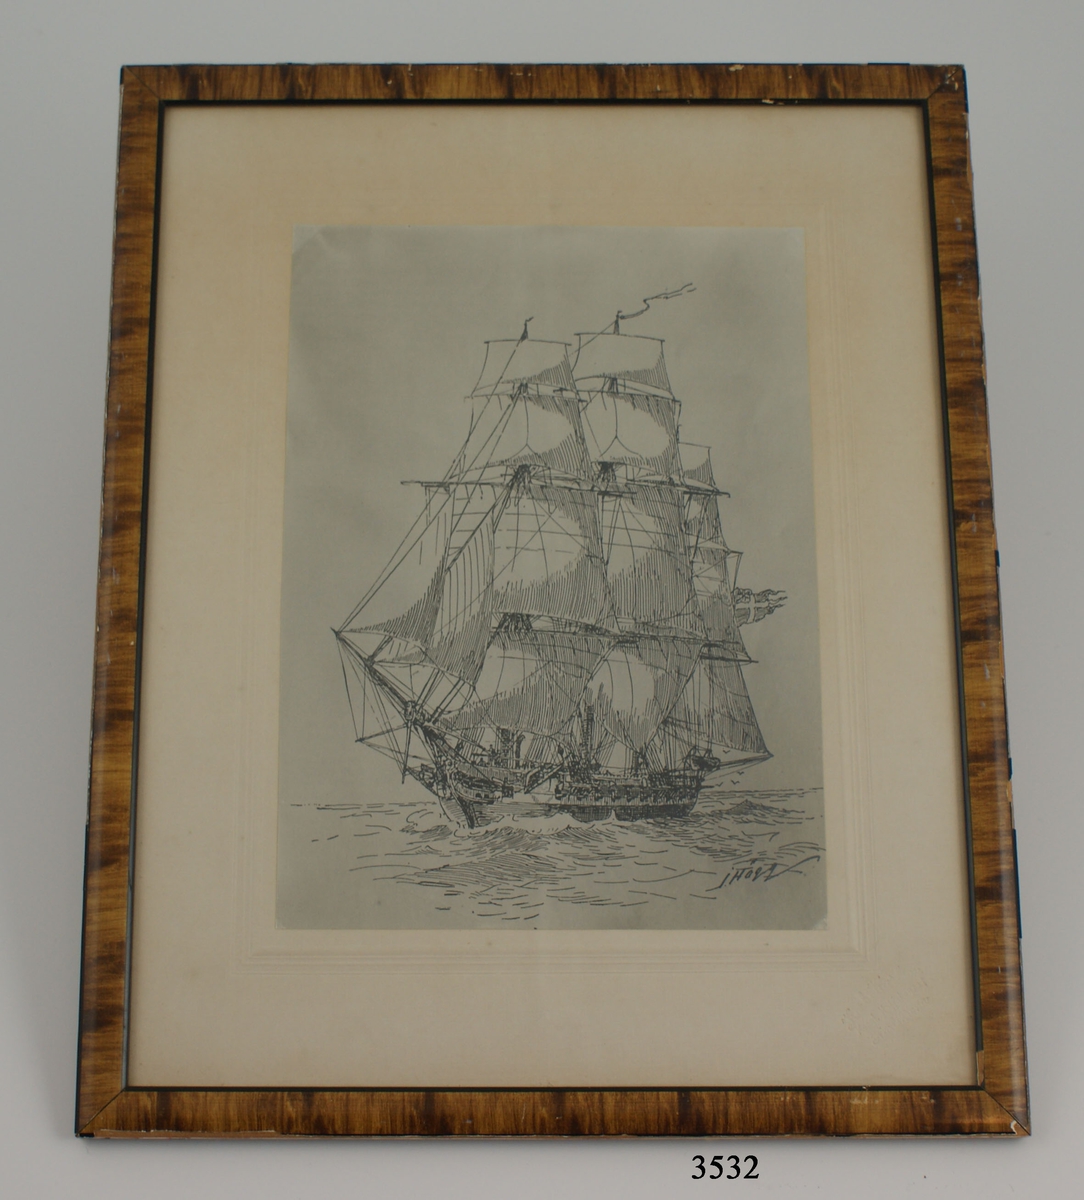 Fotografi, inom glas och ram, av korvetten Carlskrona under segel, efter en tavla av amiral Hägg.